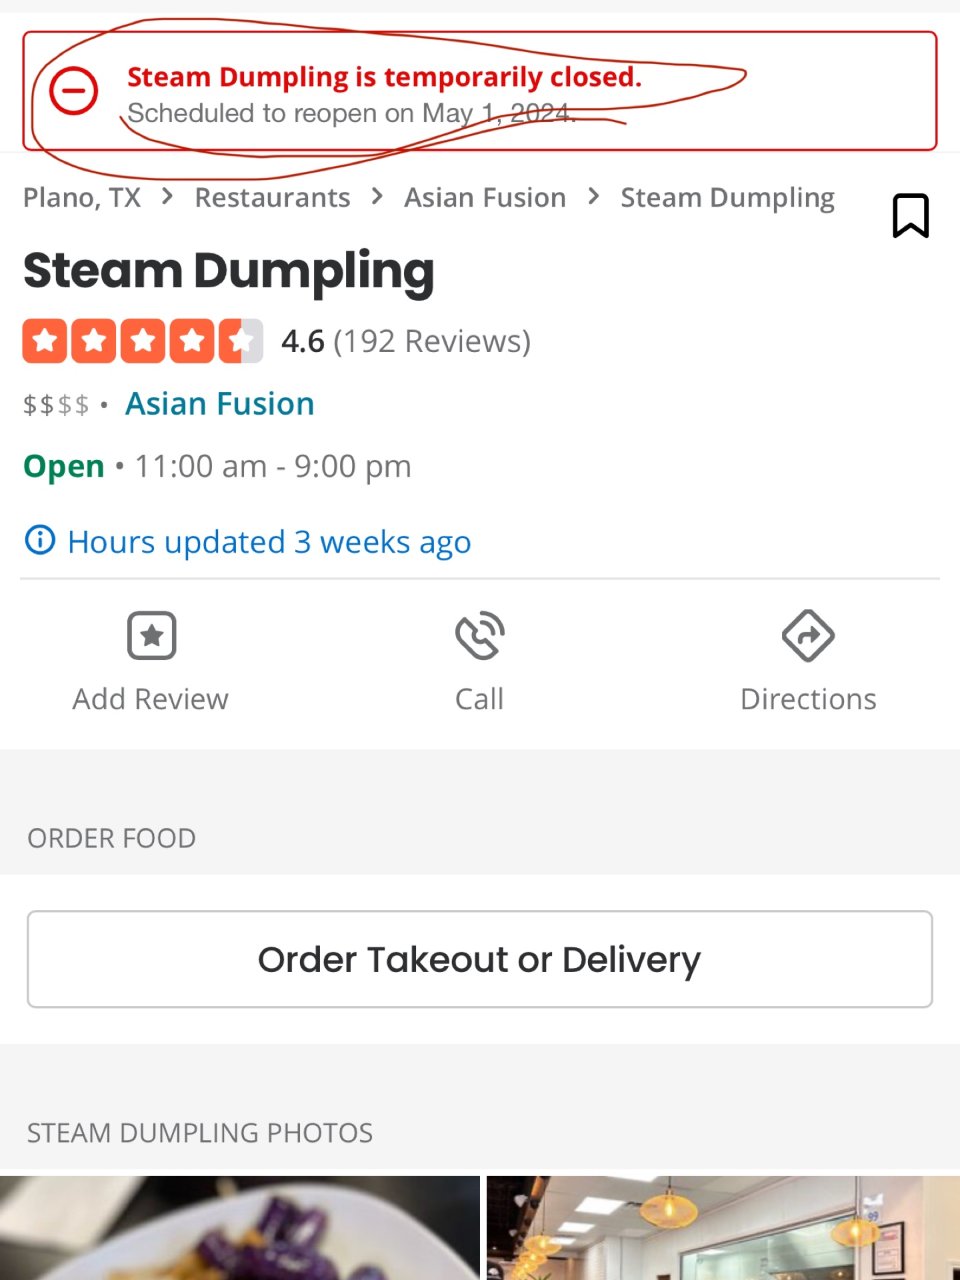 Steam Dumpling 竟然关门了...